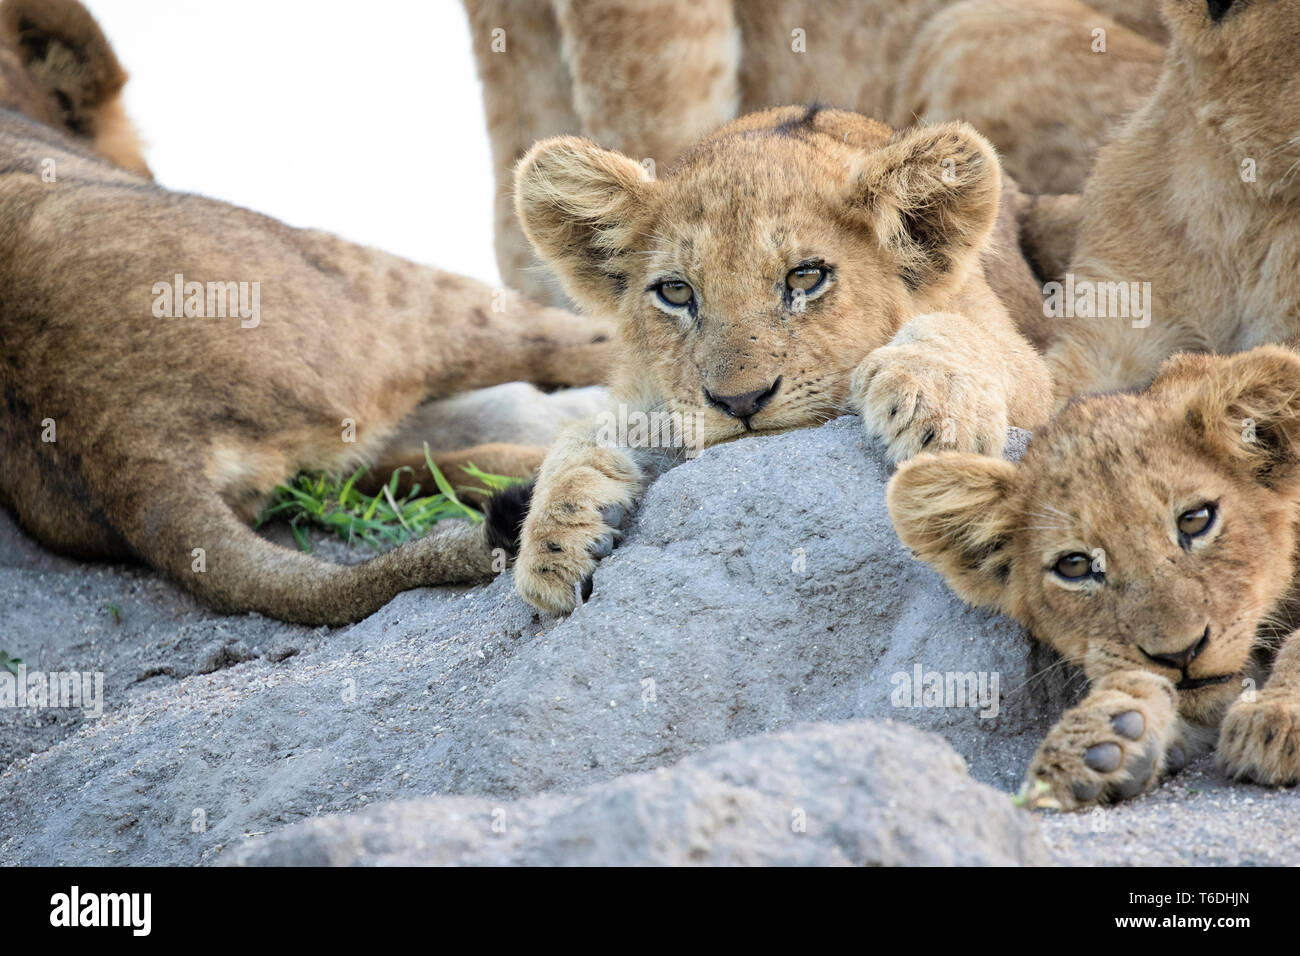 Cachorros de León, Panthera leo, se encuentran juntos en un termitero, orejas hacia delante, mirando hacia afuera del bastidor Foto de stock